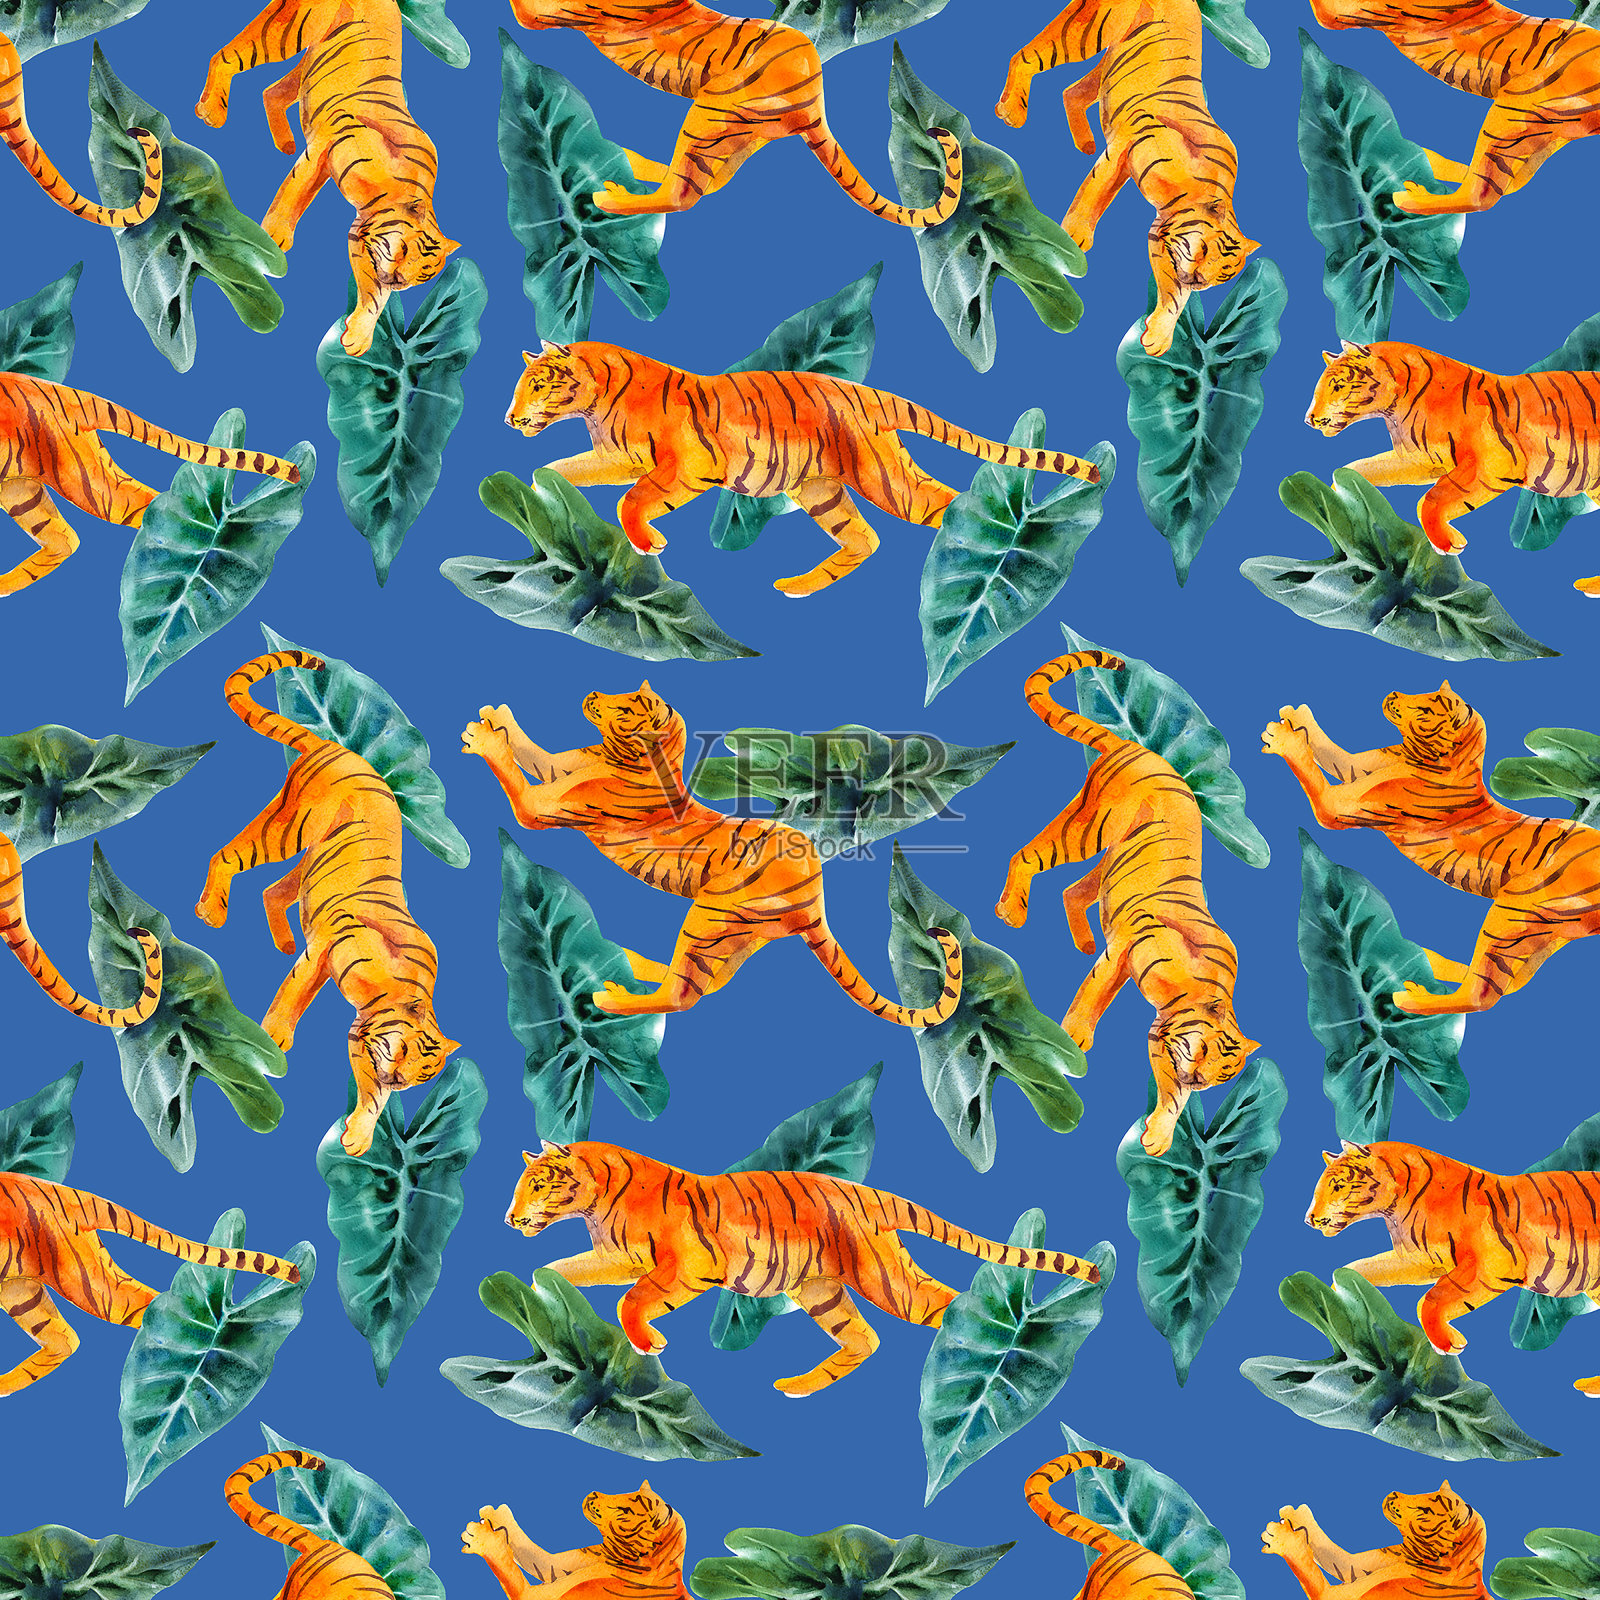 水彩无缝模式与老虎和热带植物隔离在蓝色背景。时尚的风格。插画图片素材